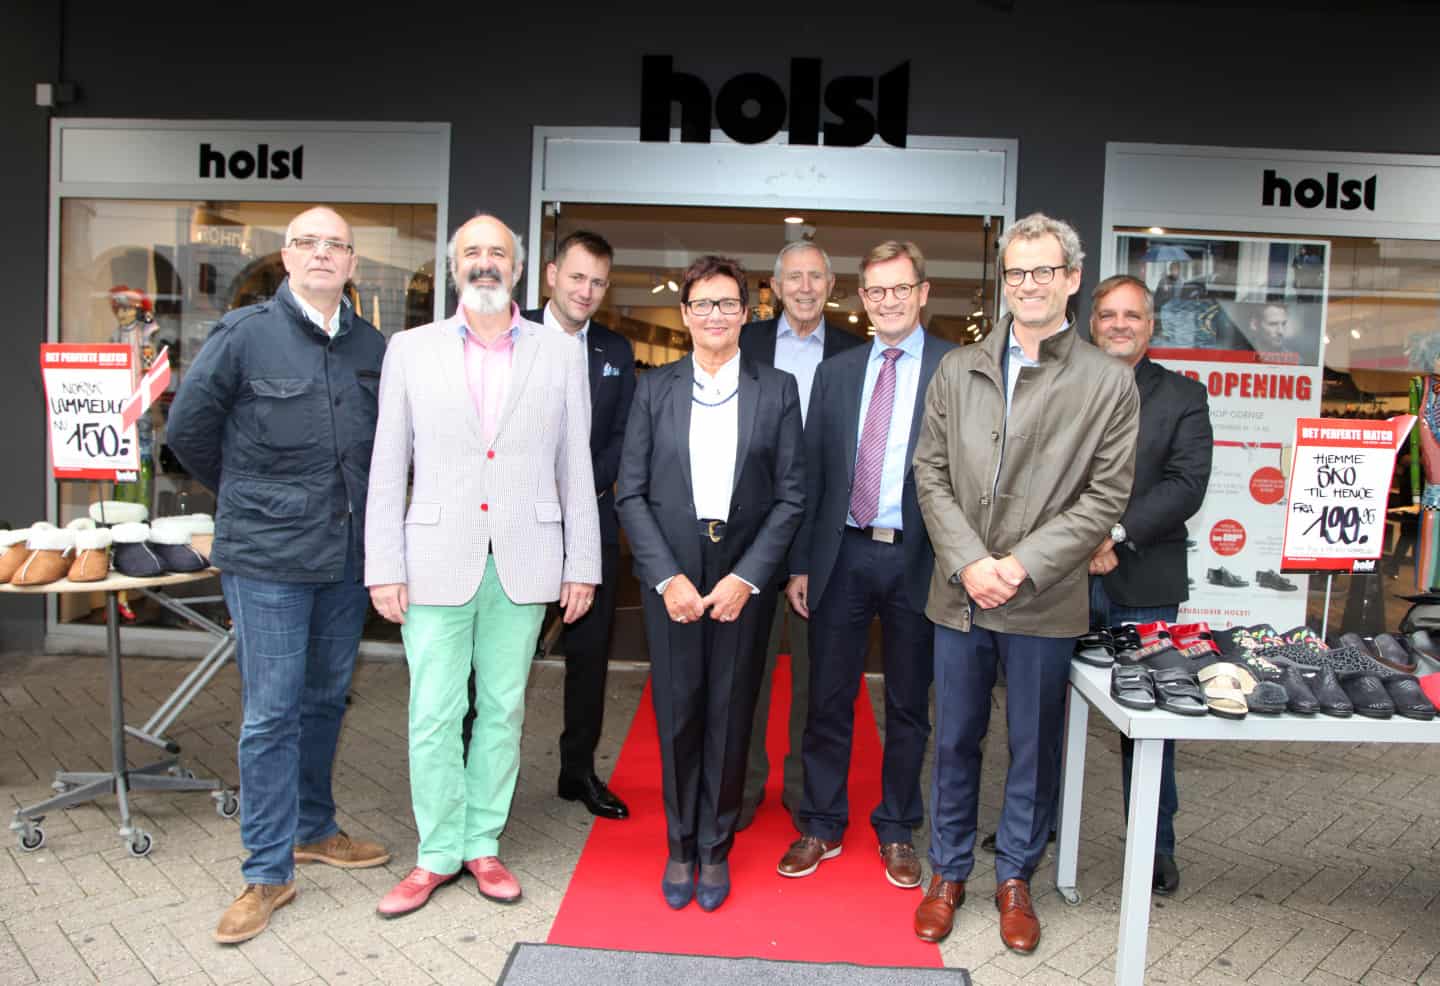 Og hold ødemark Slid Lloyd Shop åbnet hos Holst Sko i Vestergade 45-47 | fyens.dk